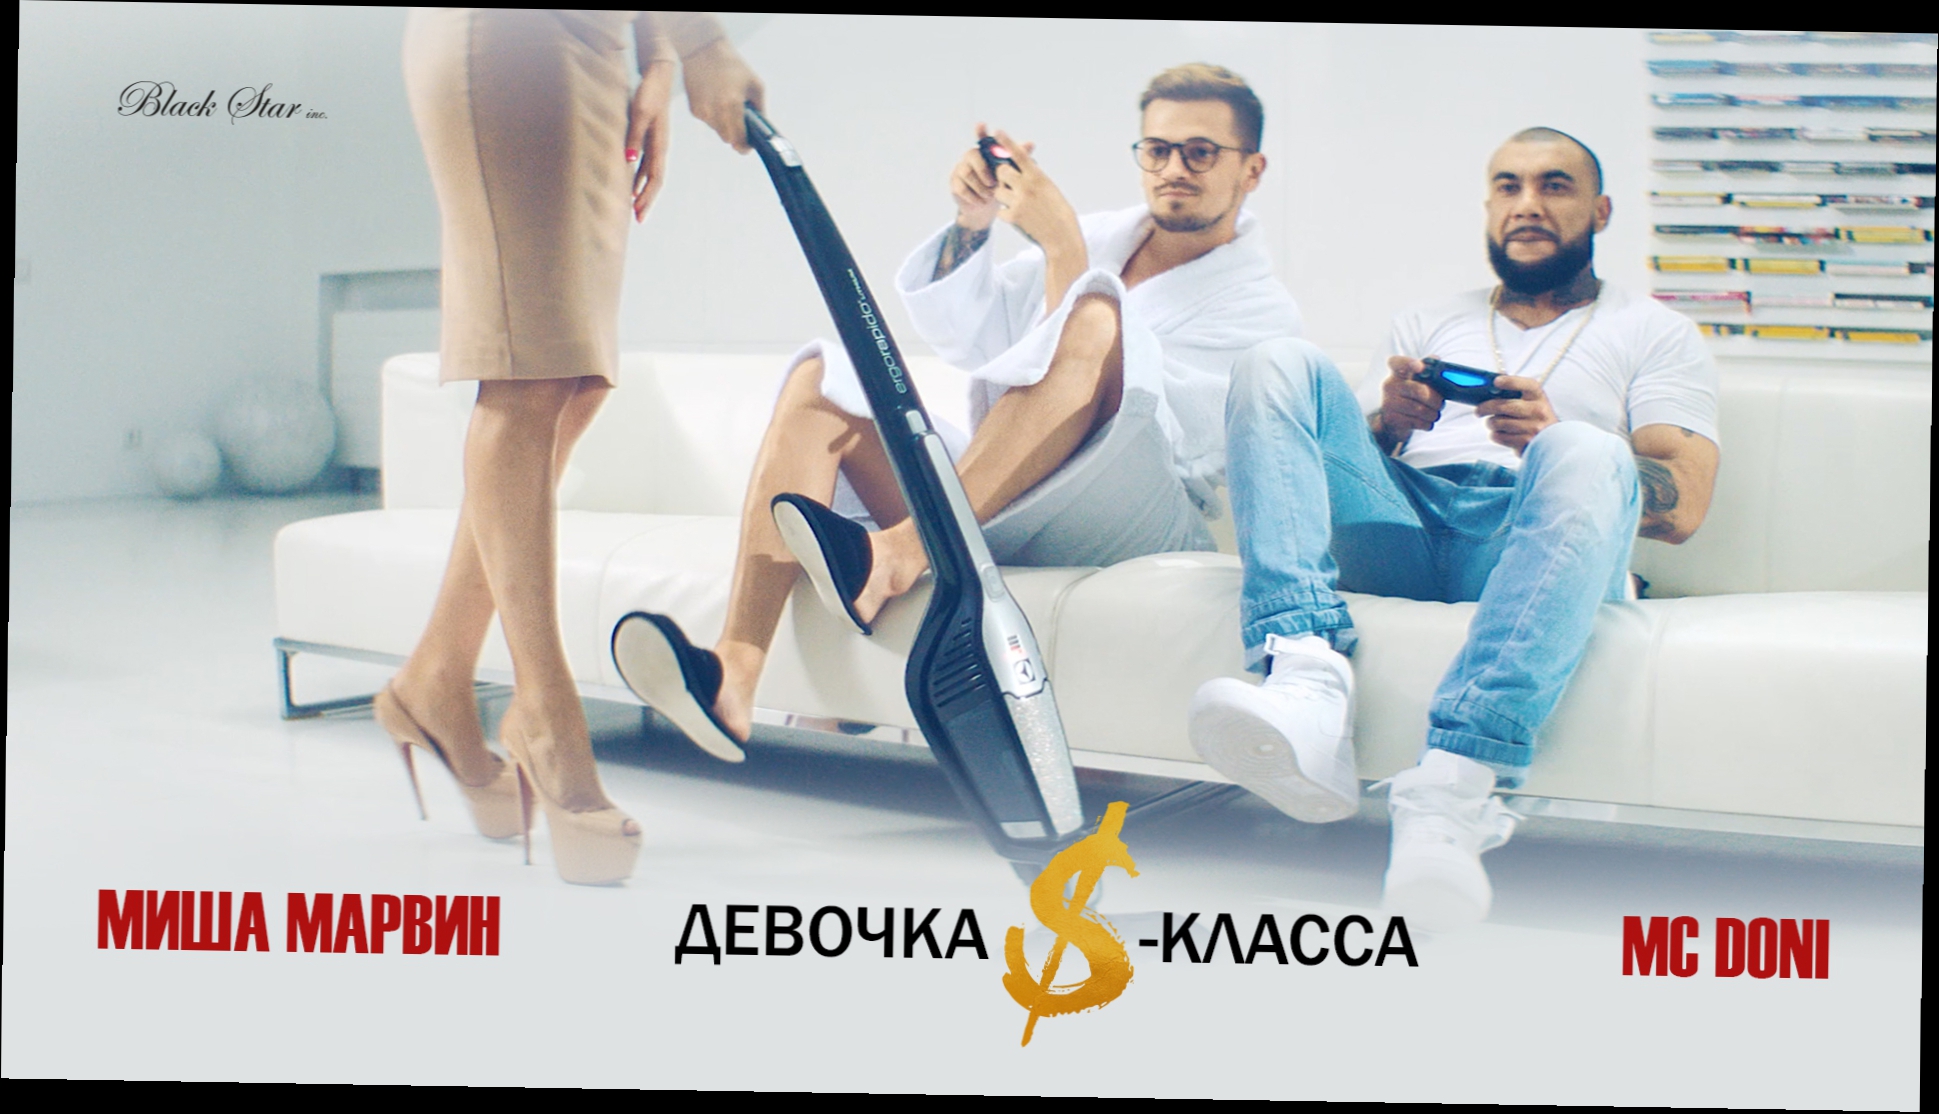 MC Doni feat. Миша Марвин - Девочка S-класса премьера клипа, 2016